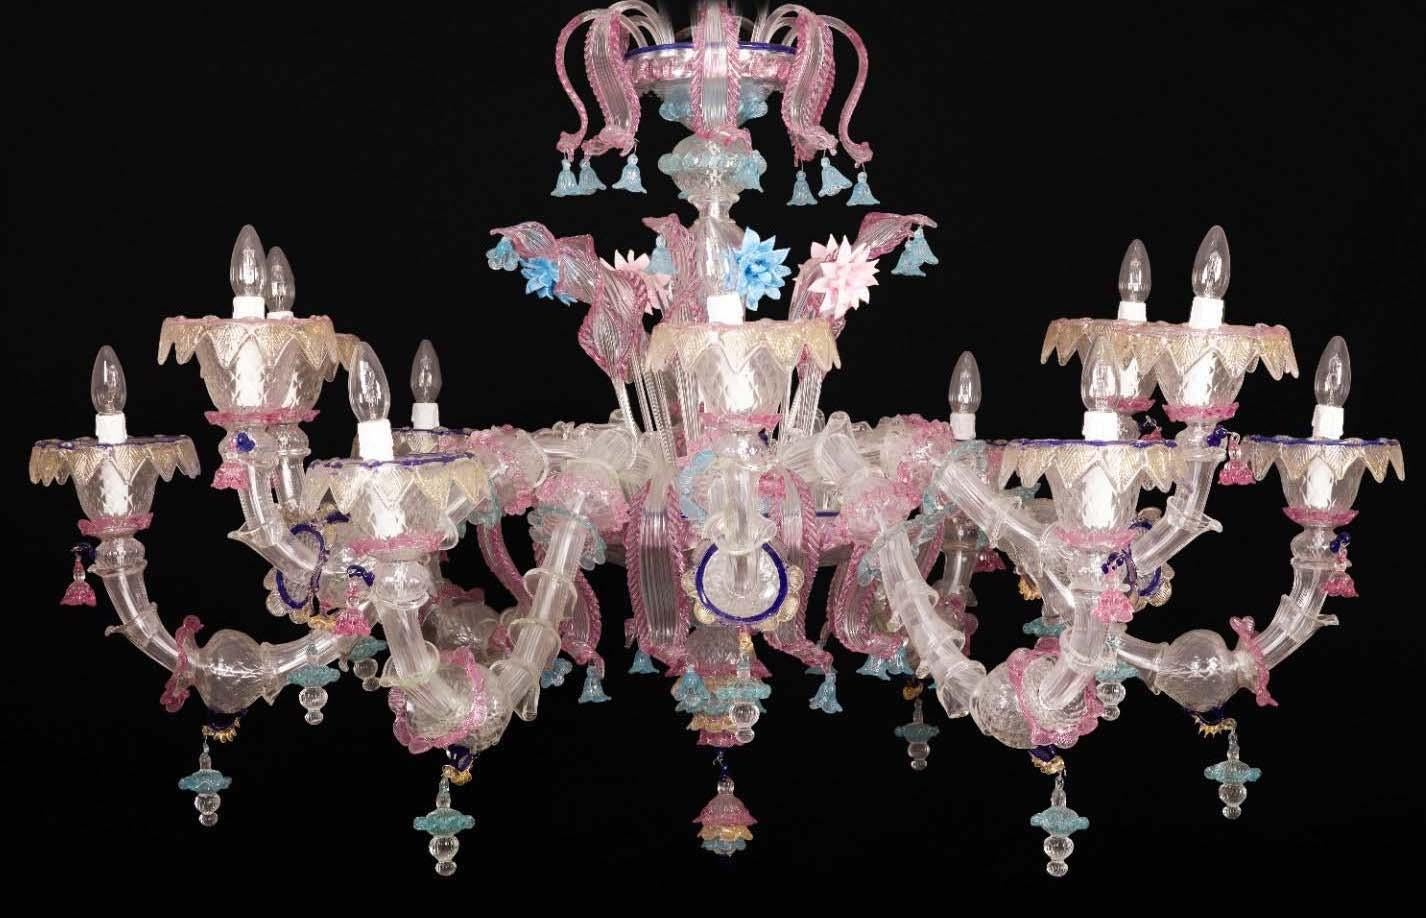 Magnifique lustre de Murano avec 18 bras et une multitude de fleurs roses et célestes en pâte de verre et inclusion d'or, créant un effet de lumière magique.
Disponible également en paire.
18 ampoules E14. Nous pouvons adapter le câblage aux